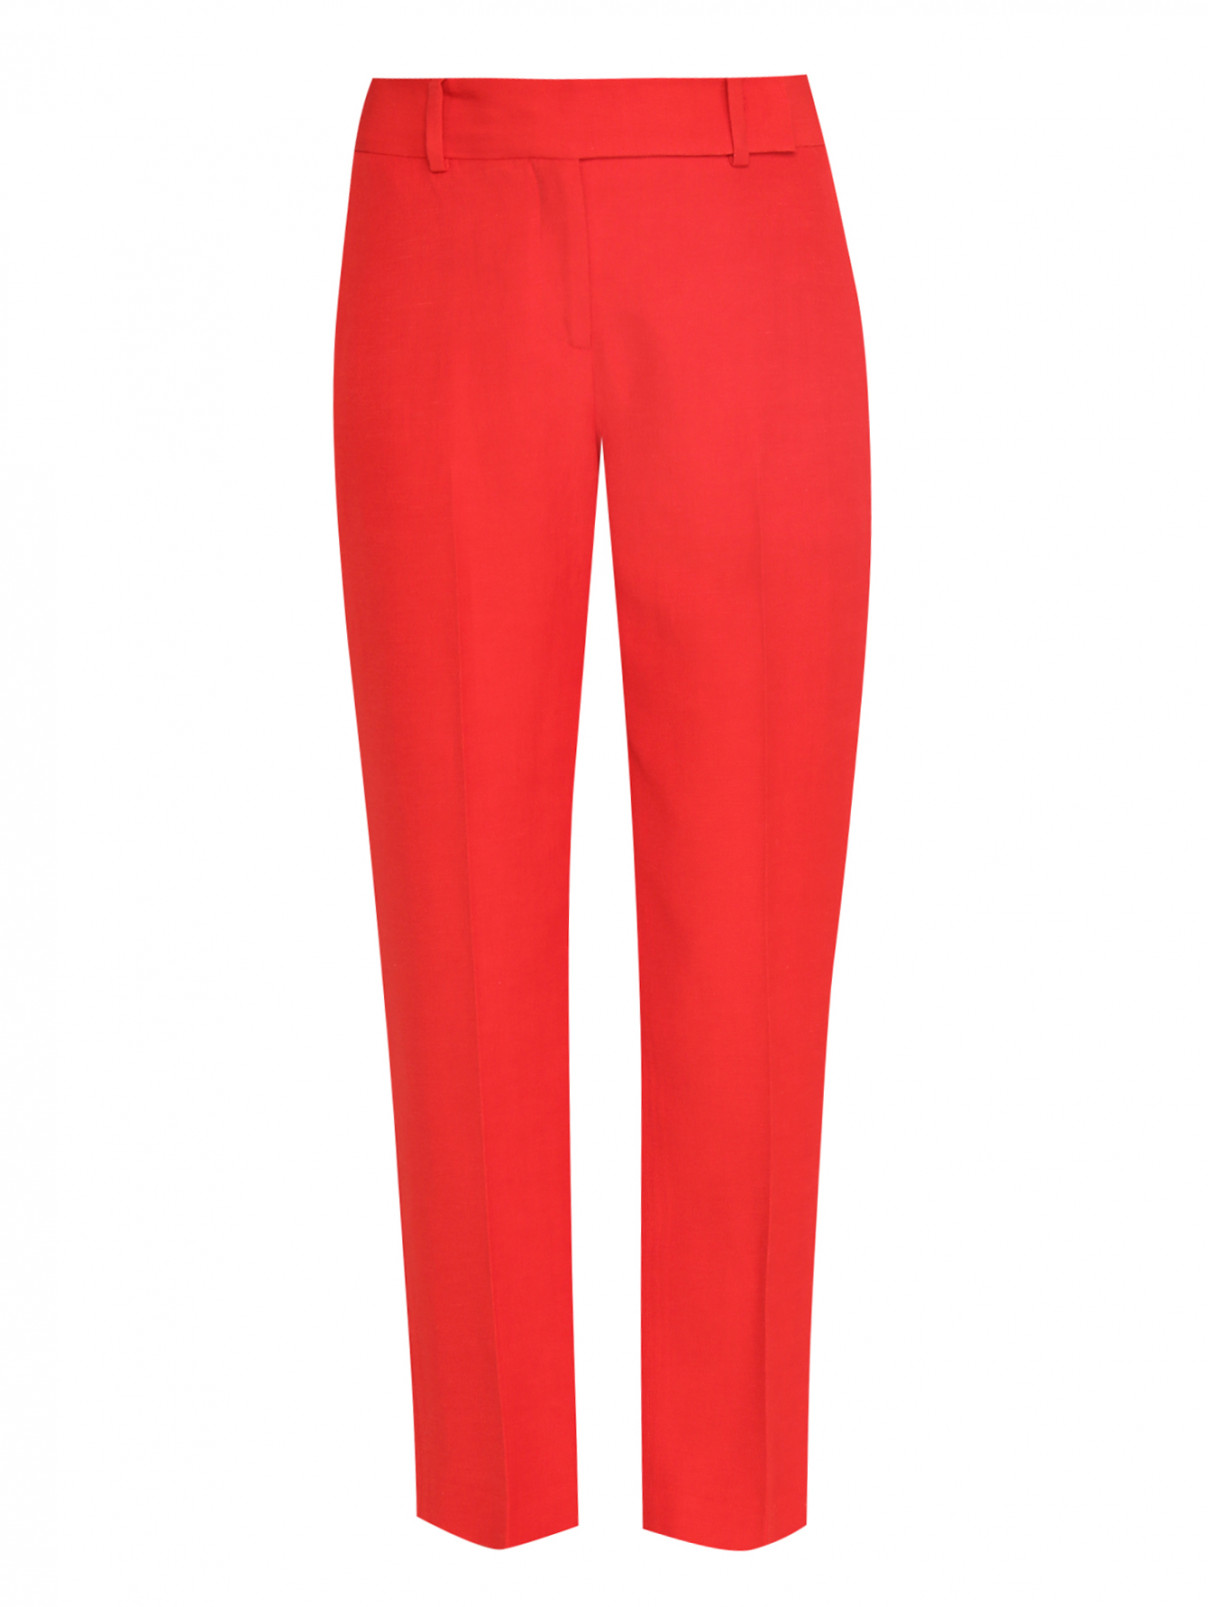 Укороченные брюки с боковыми карманами из льна Ermanno Scervino  –  Общий вид  – Цвет:  Красный